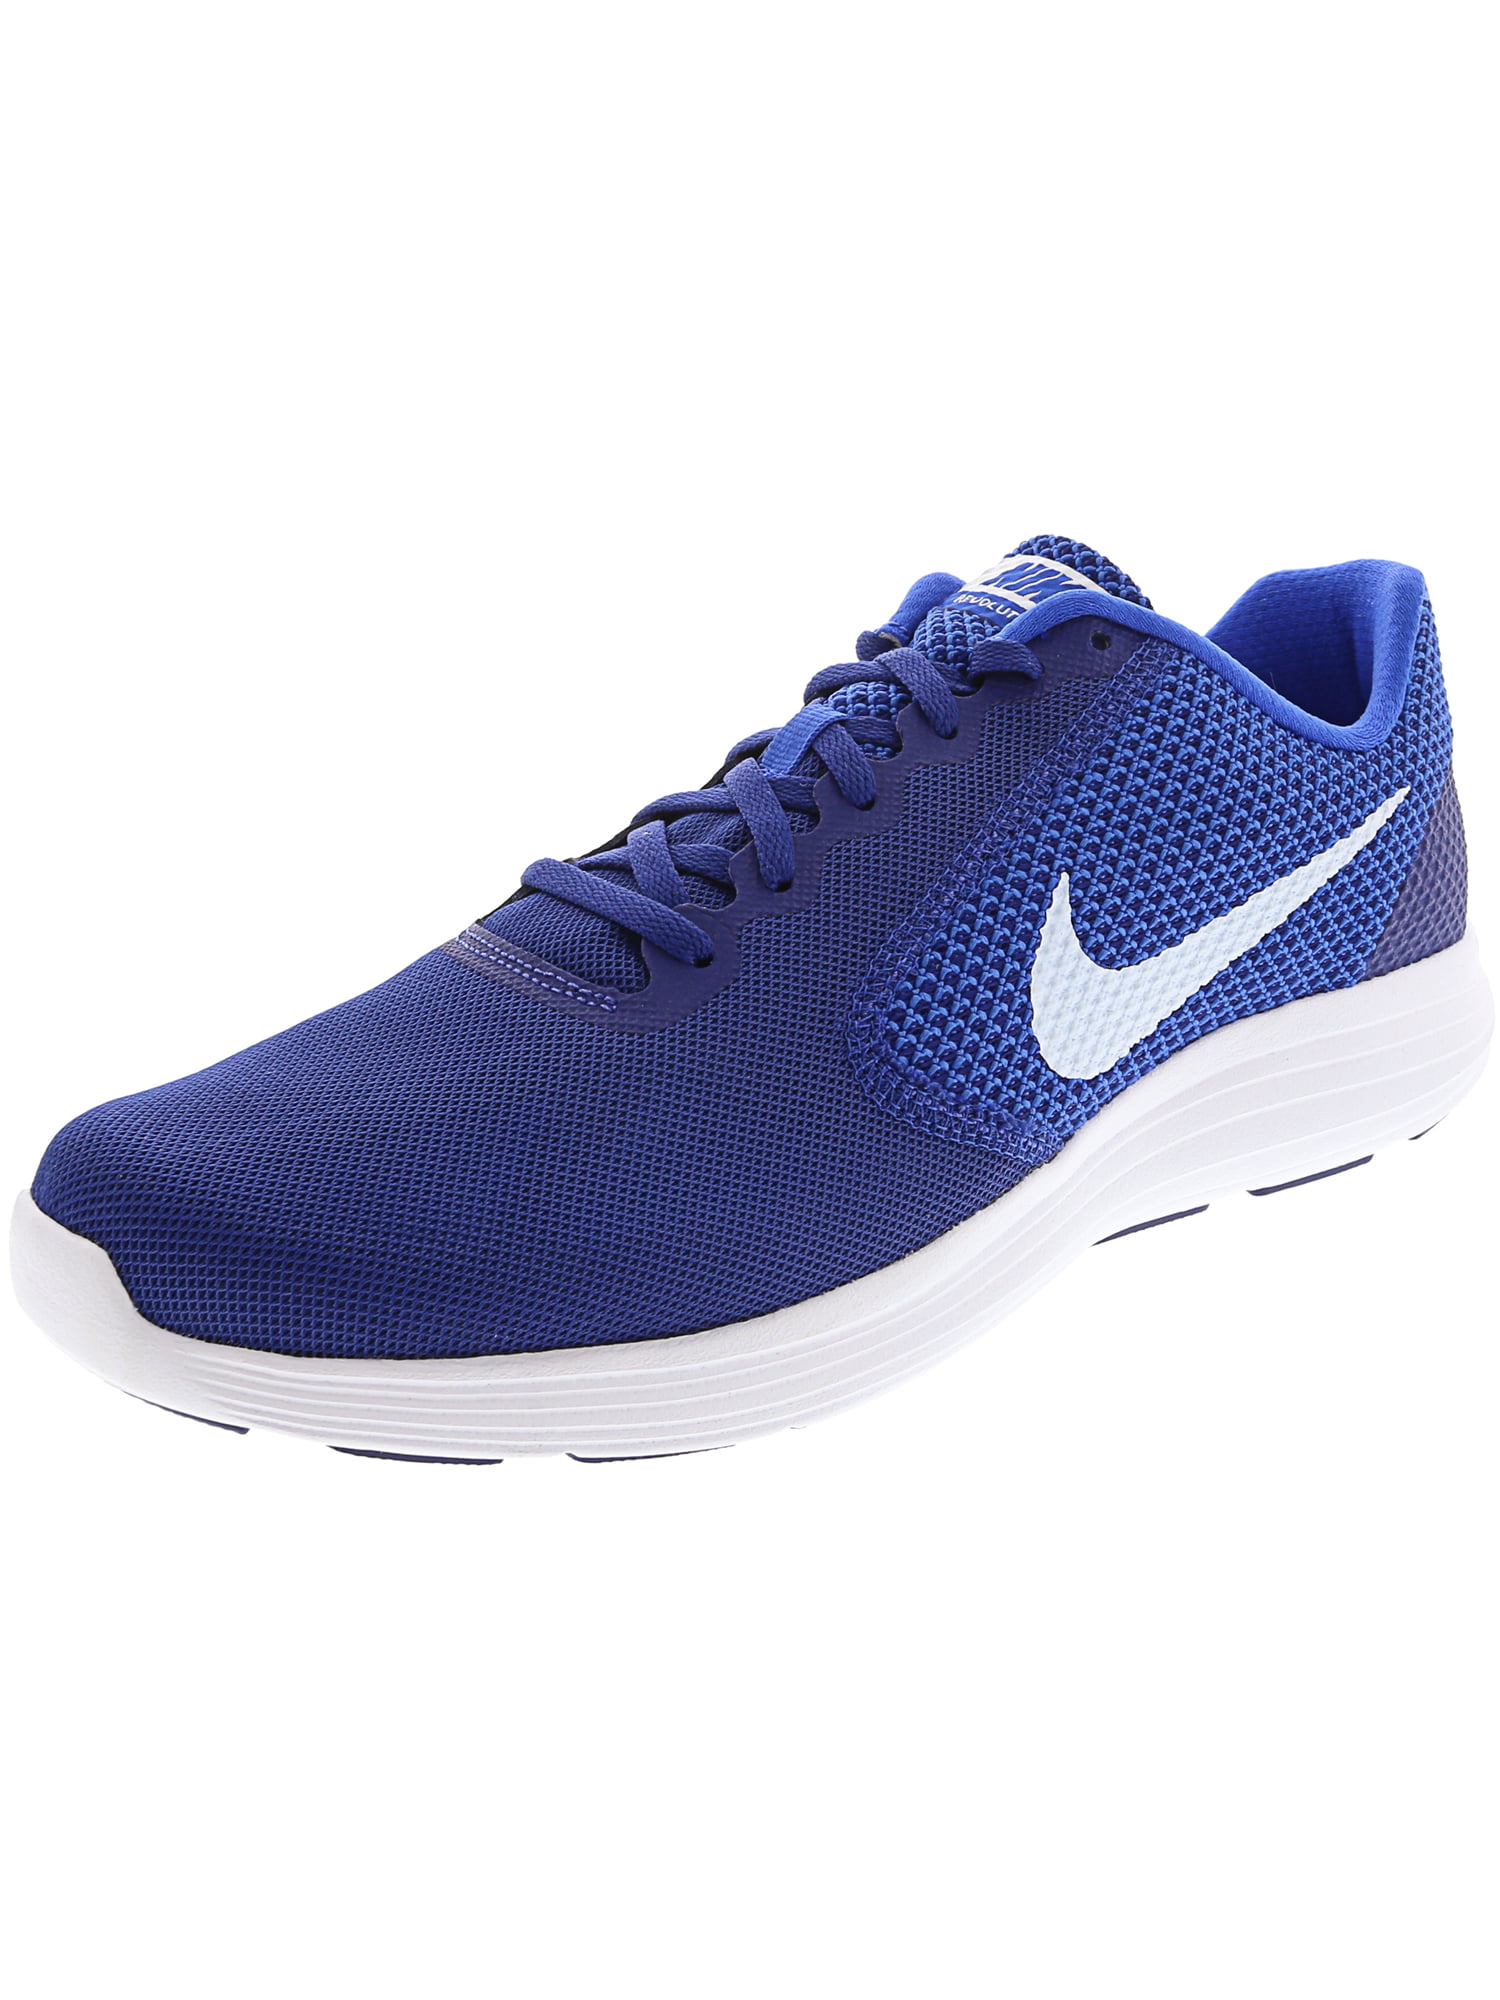 Nike Revolution 3 Running for Men - 10M - Deep Royal Blue / White - Walmart.com